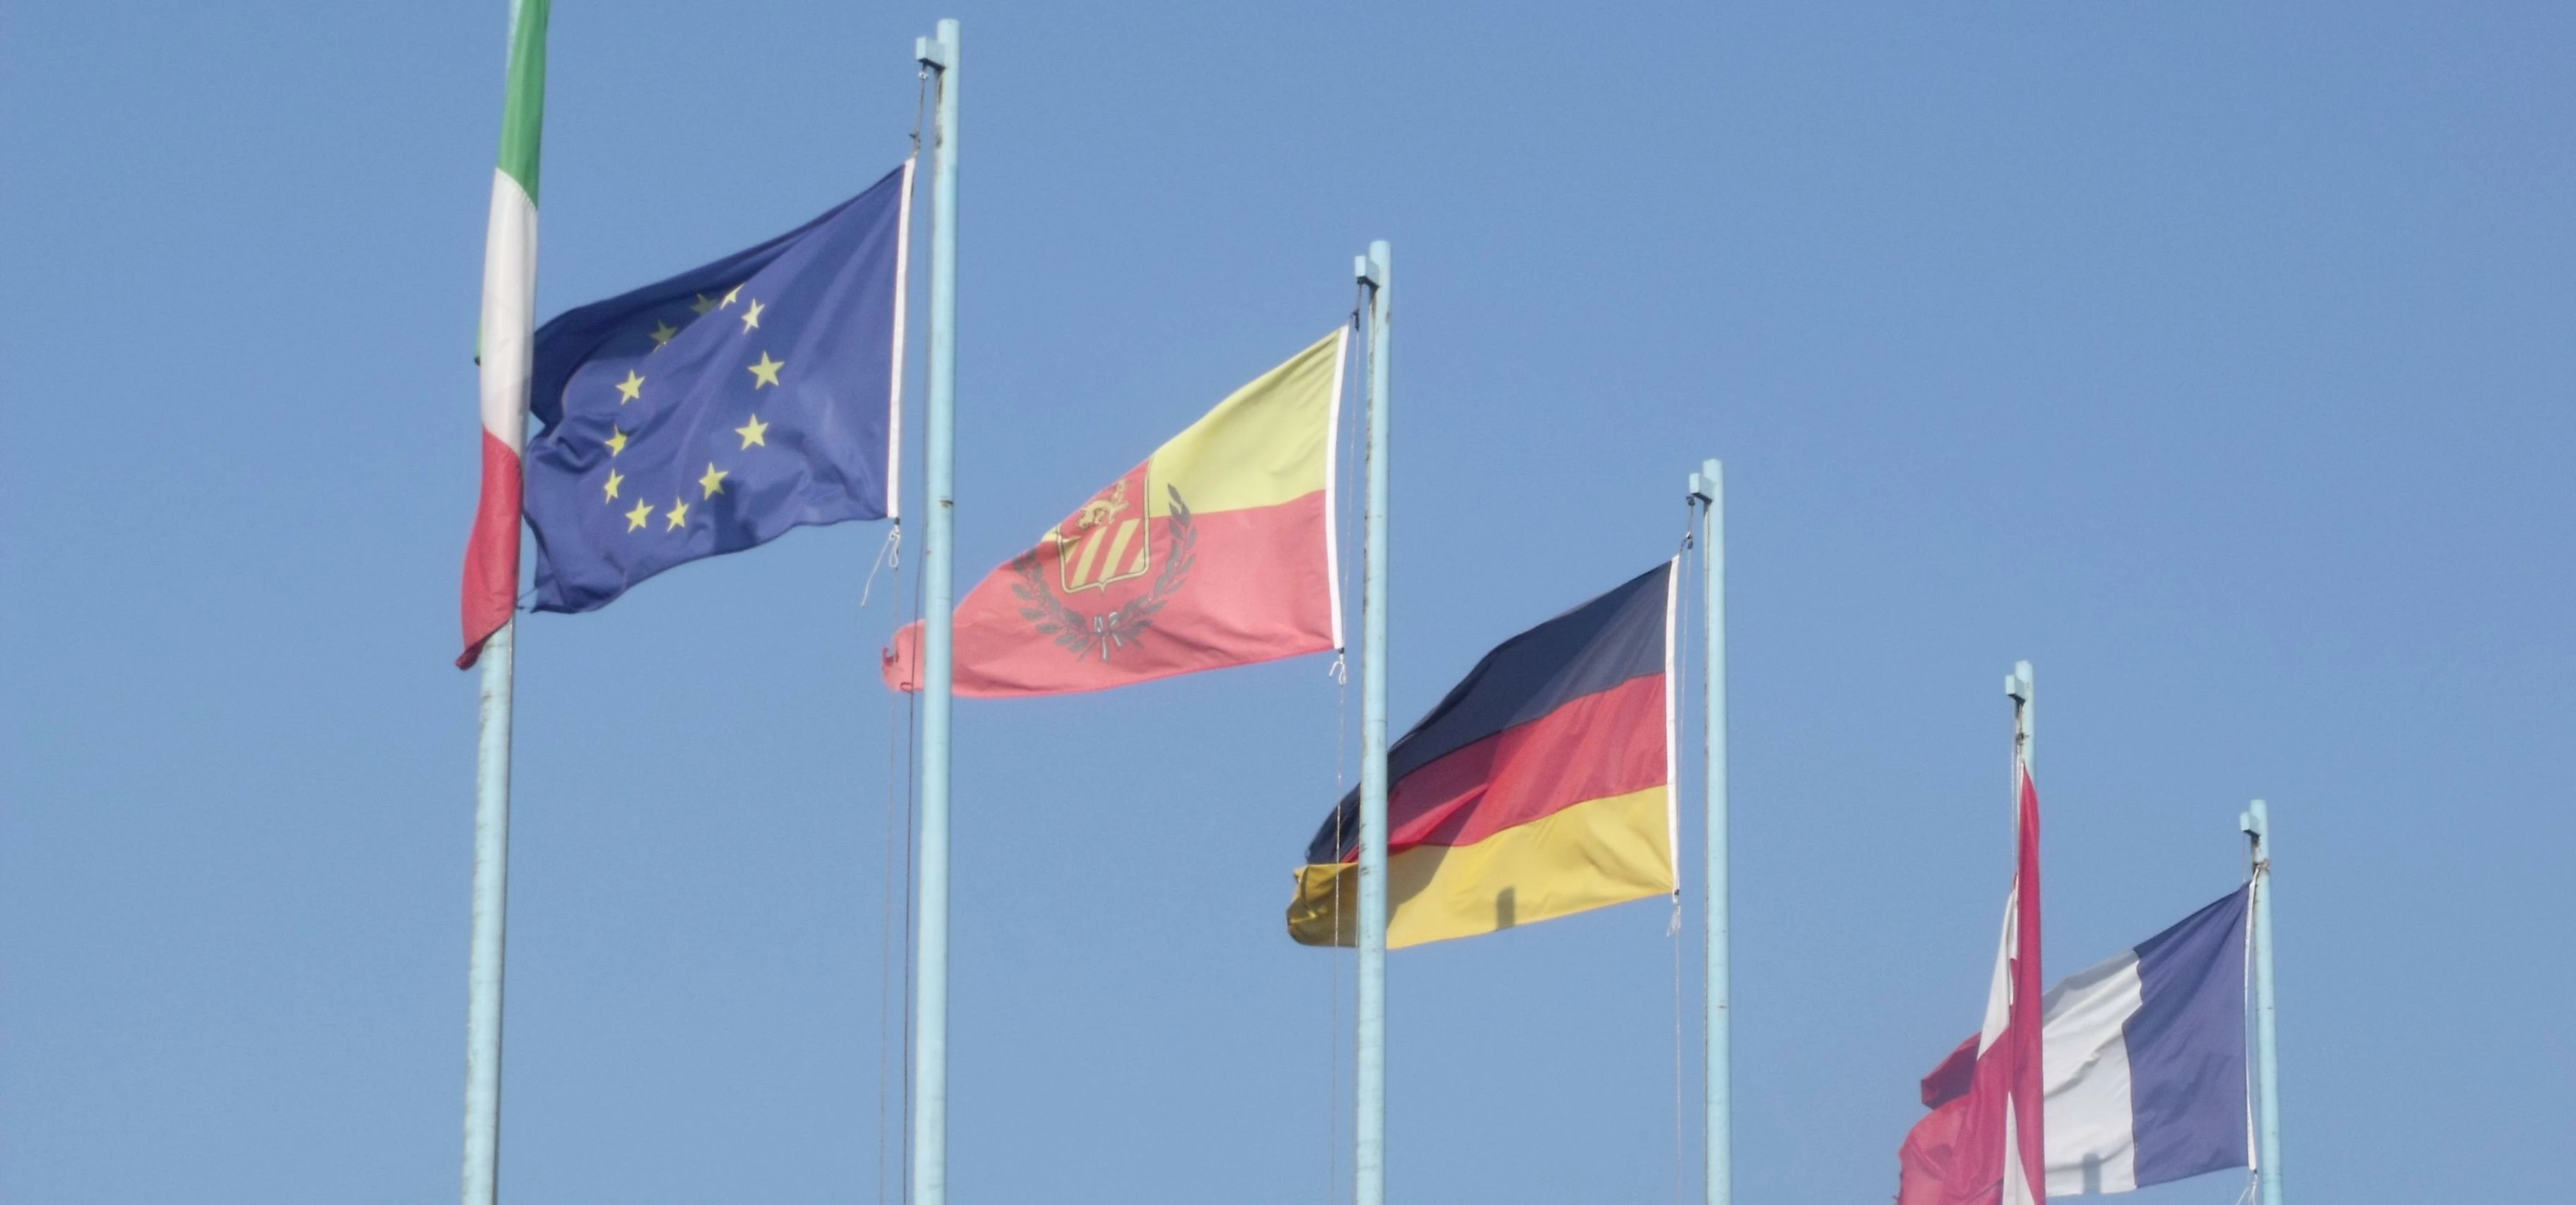 Castelletto - Lake Garda - flags of Europe